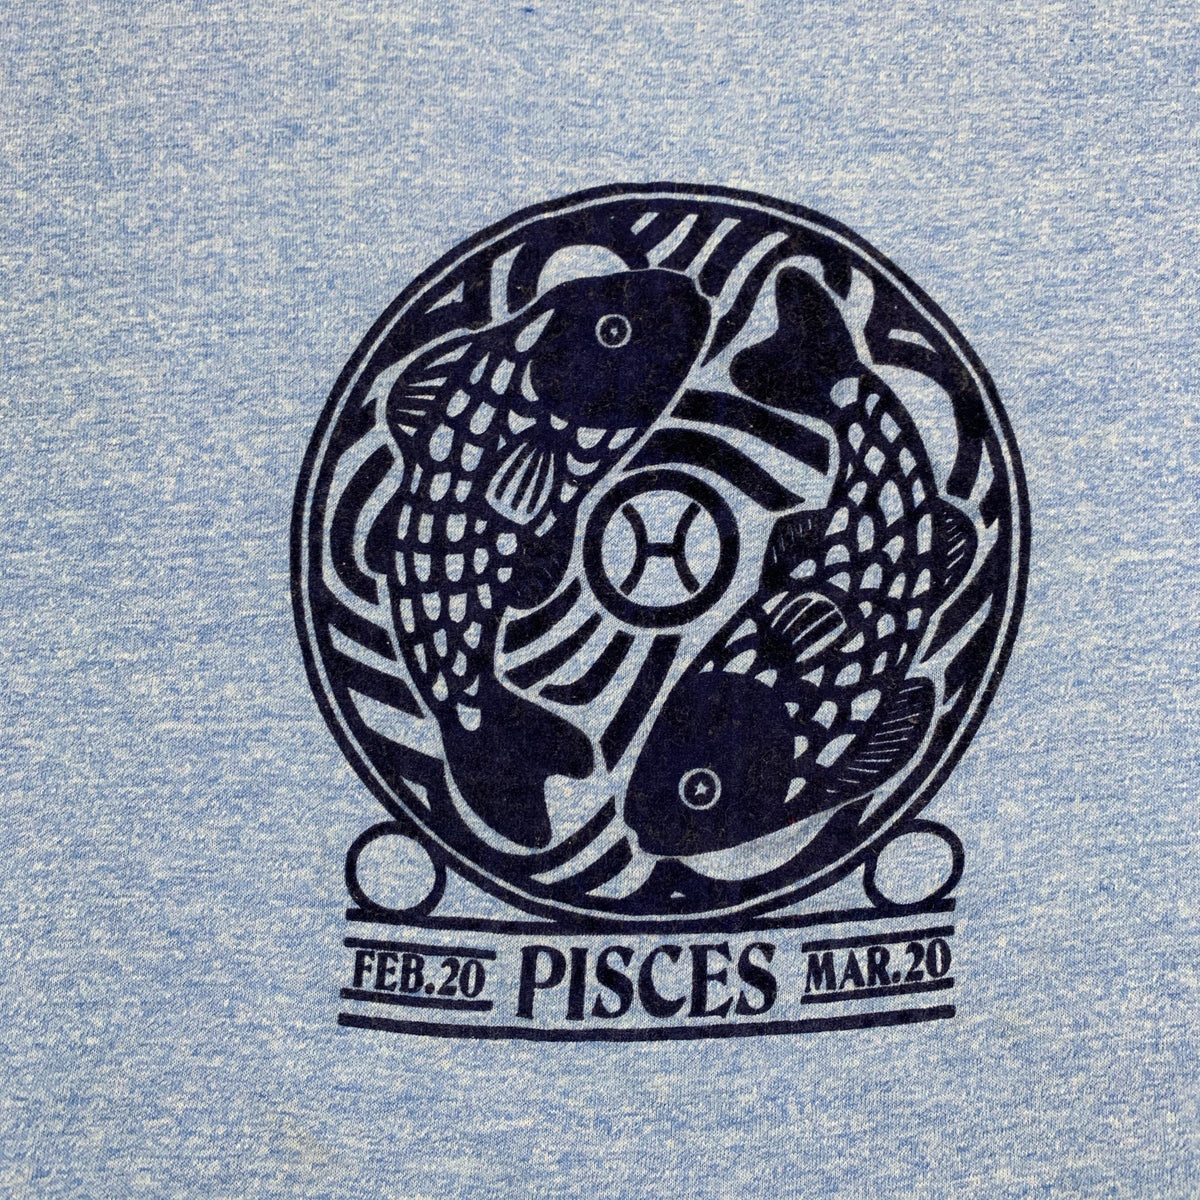 Vintage Pisces “Feb.20-Mar.20” Ringer Shirt - jointcustodydc